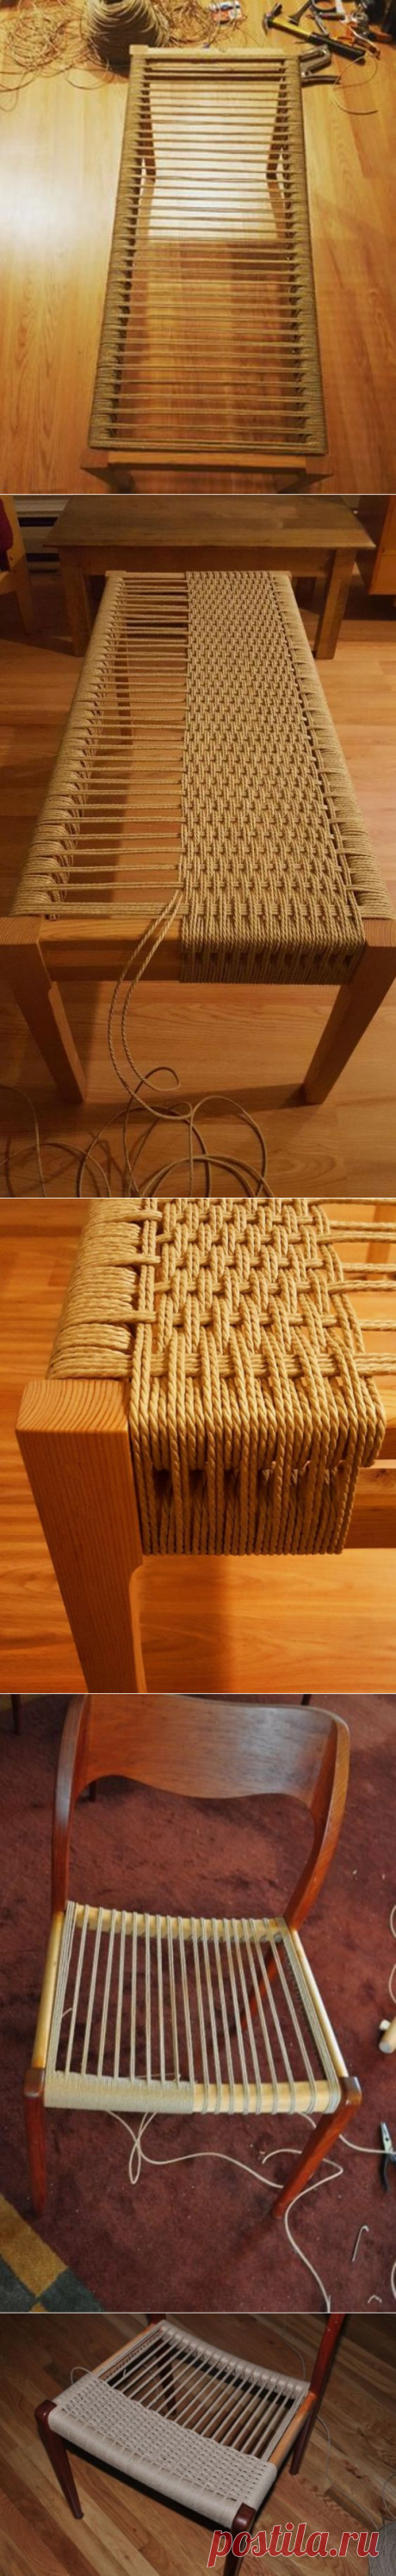 Идеи создания плетёной мебели своими руками — Сделай сам, идеи для творчества - DIY Ideas